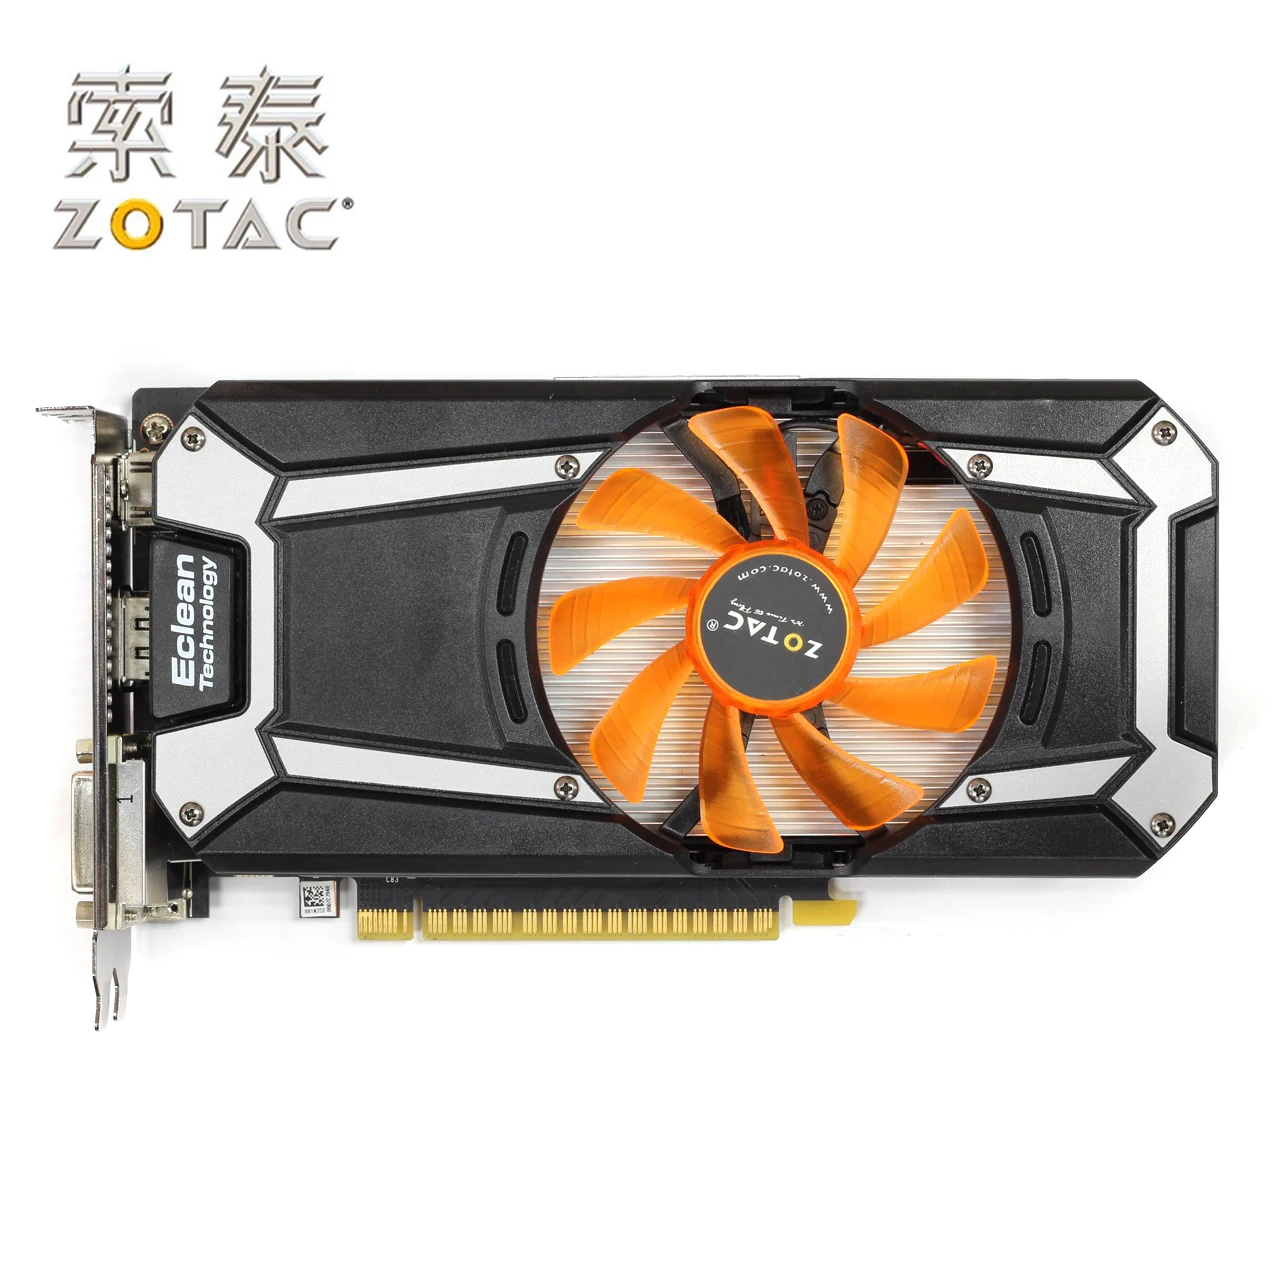 Оригинальная видеокарта ZOTAC GeForce GTX 750Ti-1GD5 Thunder HA для видеокарт NVIDIA GTX750 GT700 1GD5 1G 6000 МГц GDDR5 б/у